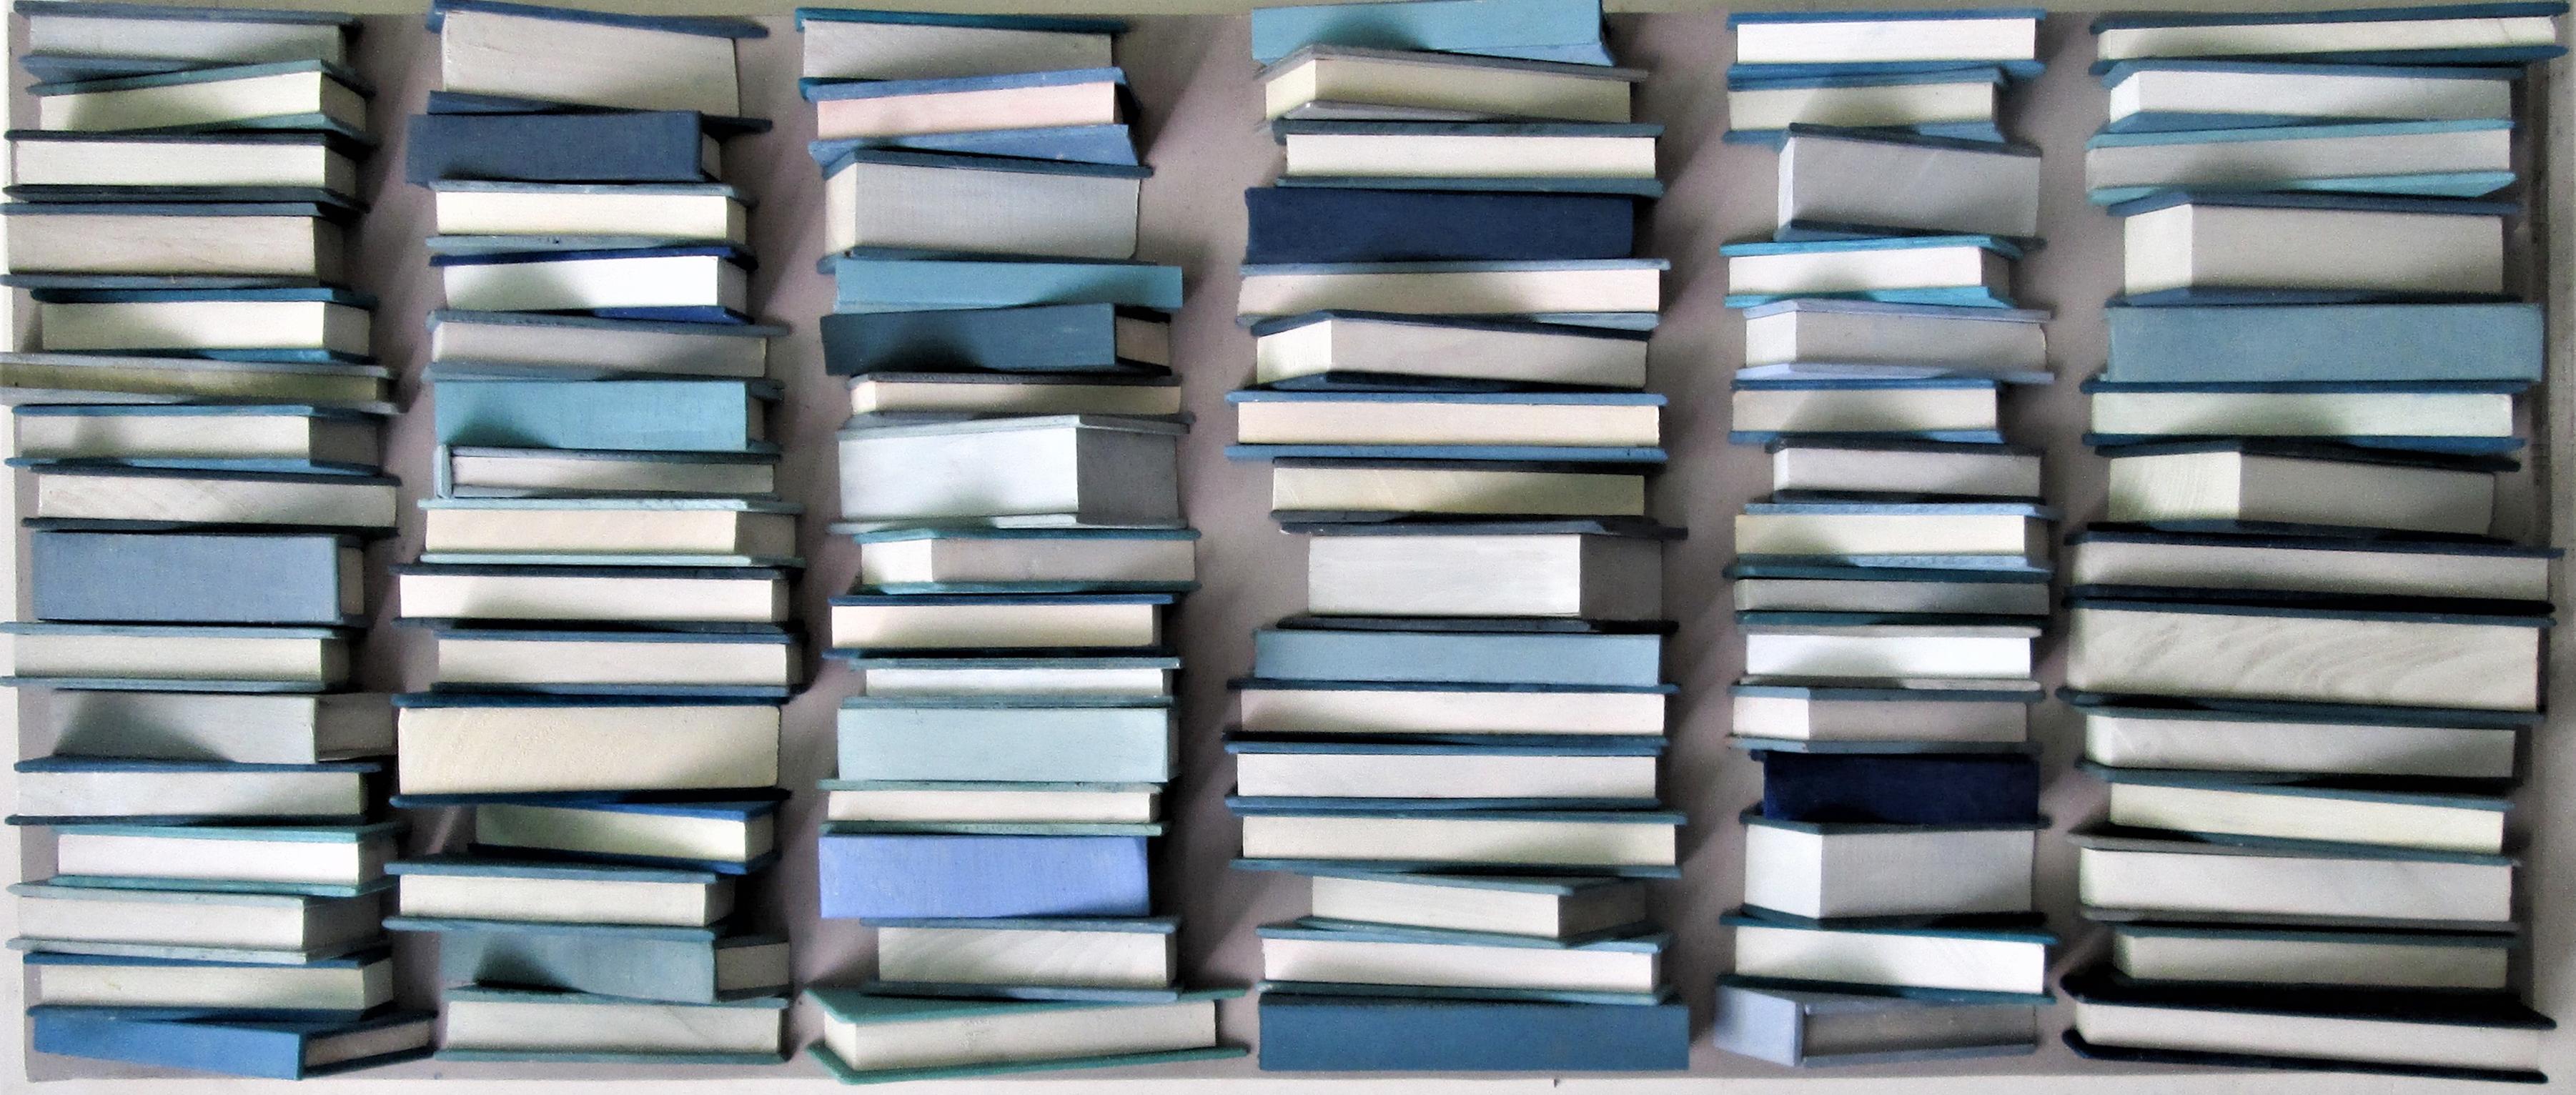 Blaue Bücher: Abstrakte geometrische 3D-Holz-Wandskulptur in Blau, Grau, Weiß